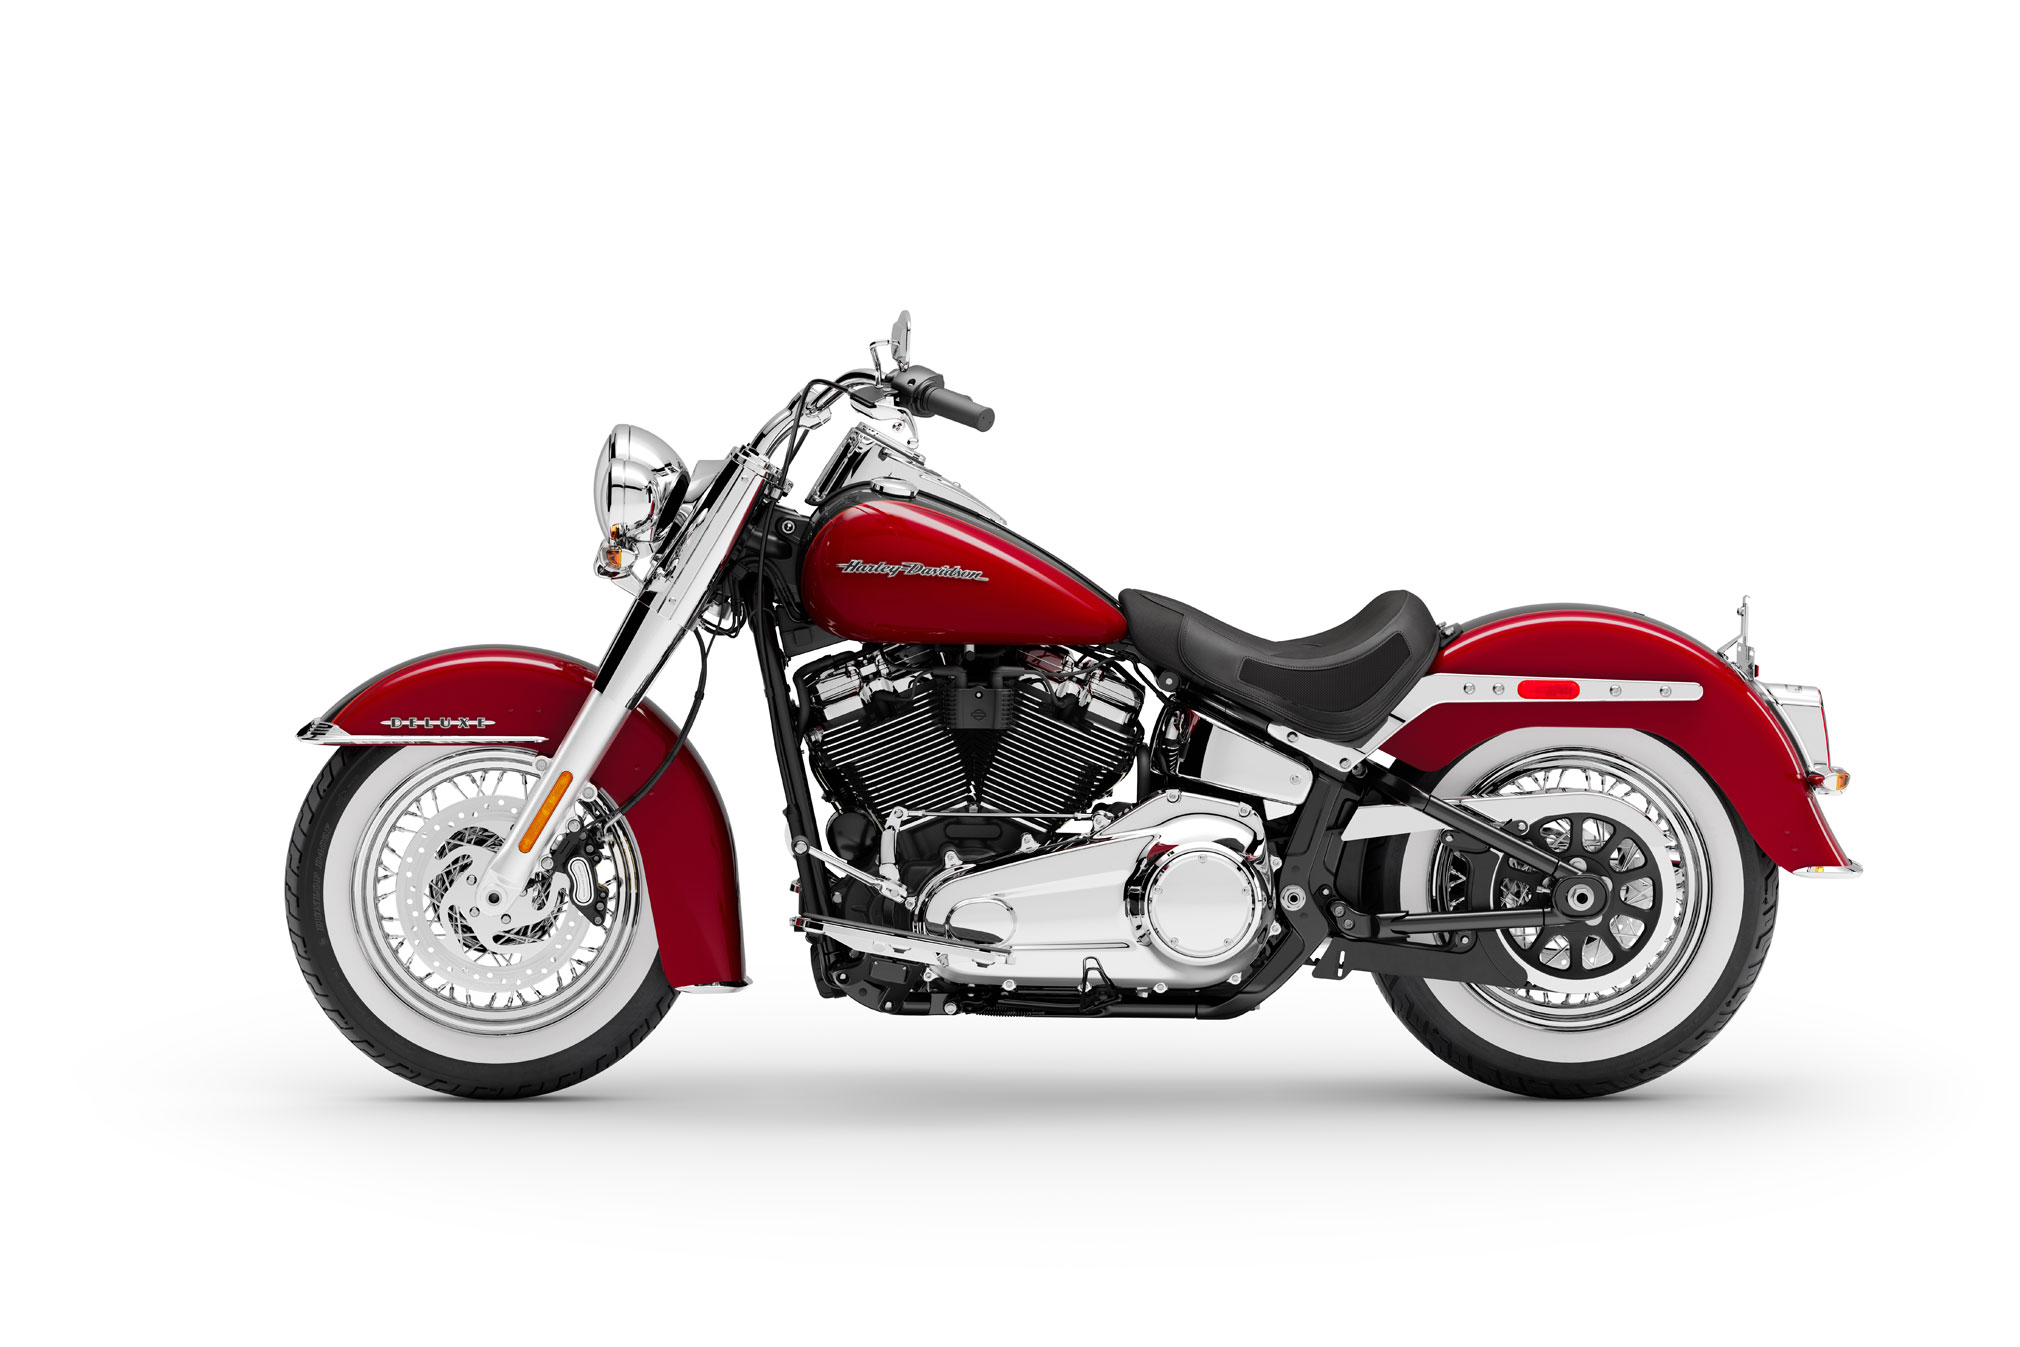 2009 Harley Davidson Flstn Softail Deluxe Top Speed